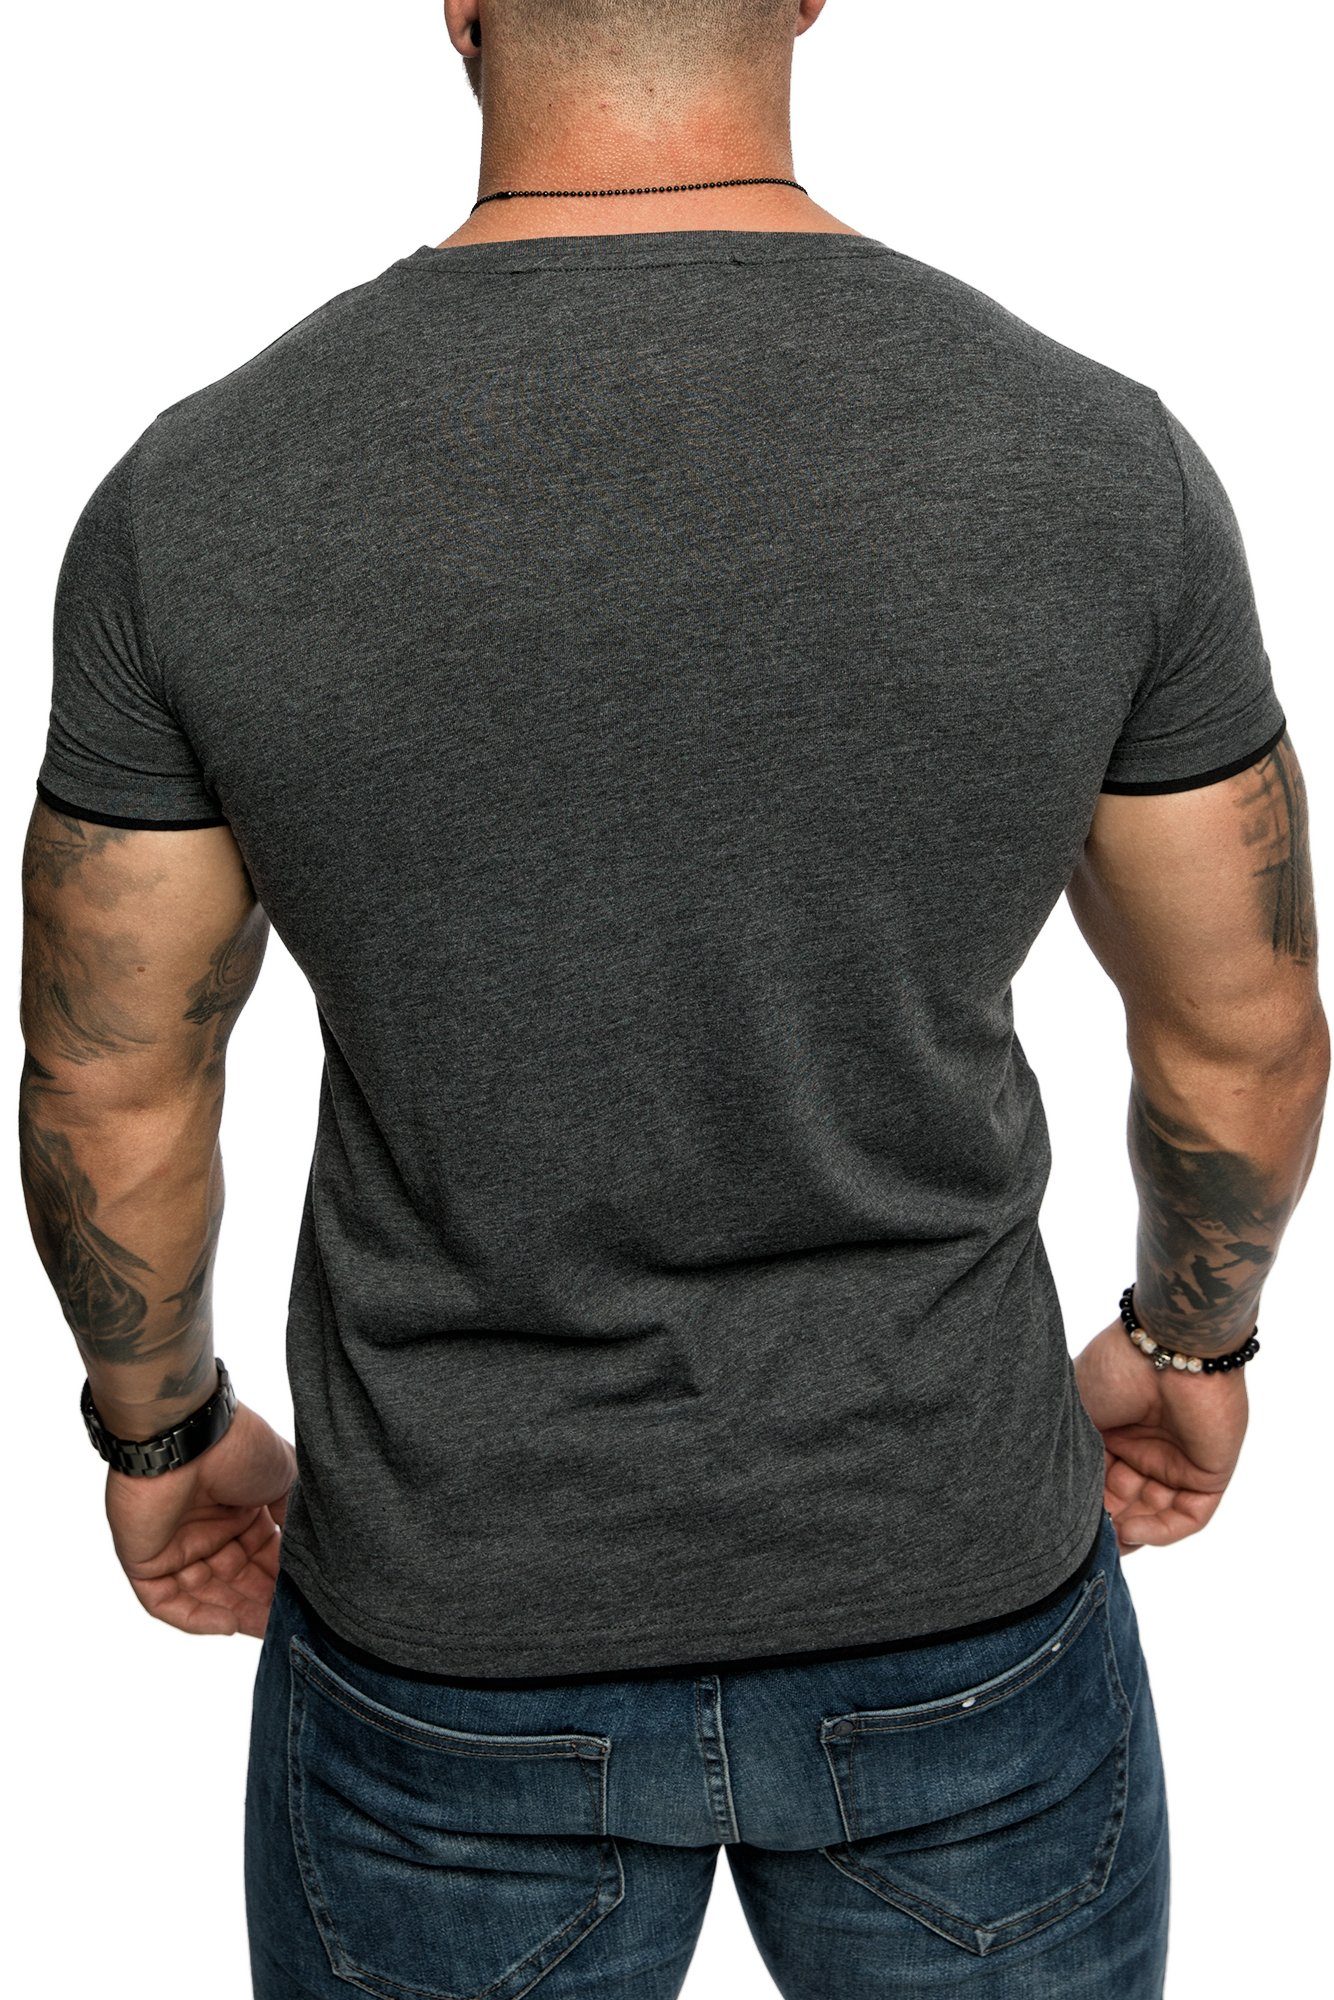 Herren LAKEWOOD Rundhalsausschnitt Farbig T-Shirt Slim-Fit Anthrazit/Schwarz Shirt Doppel Amaci&Sons Basic mit